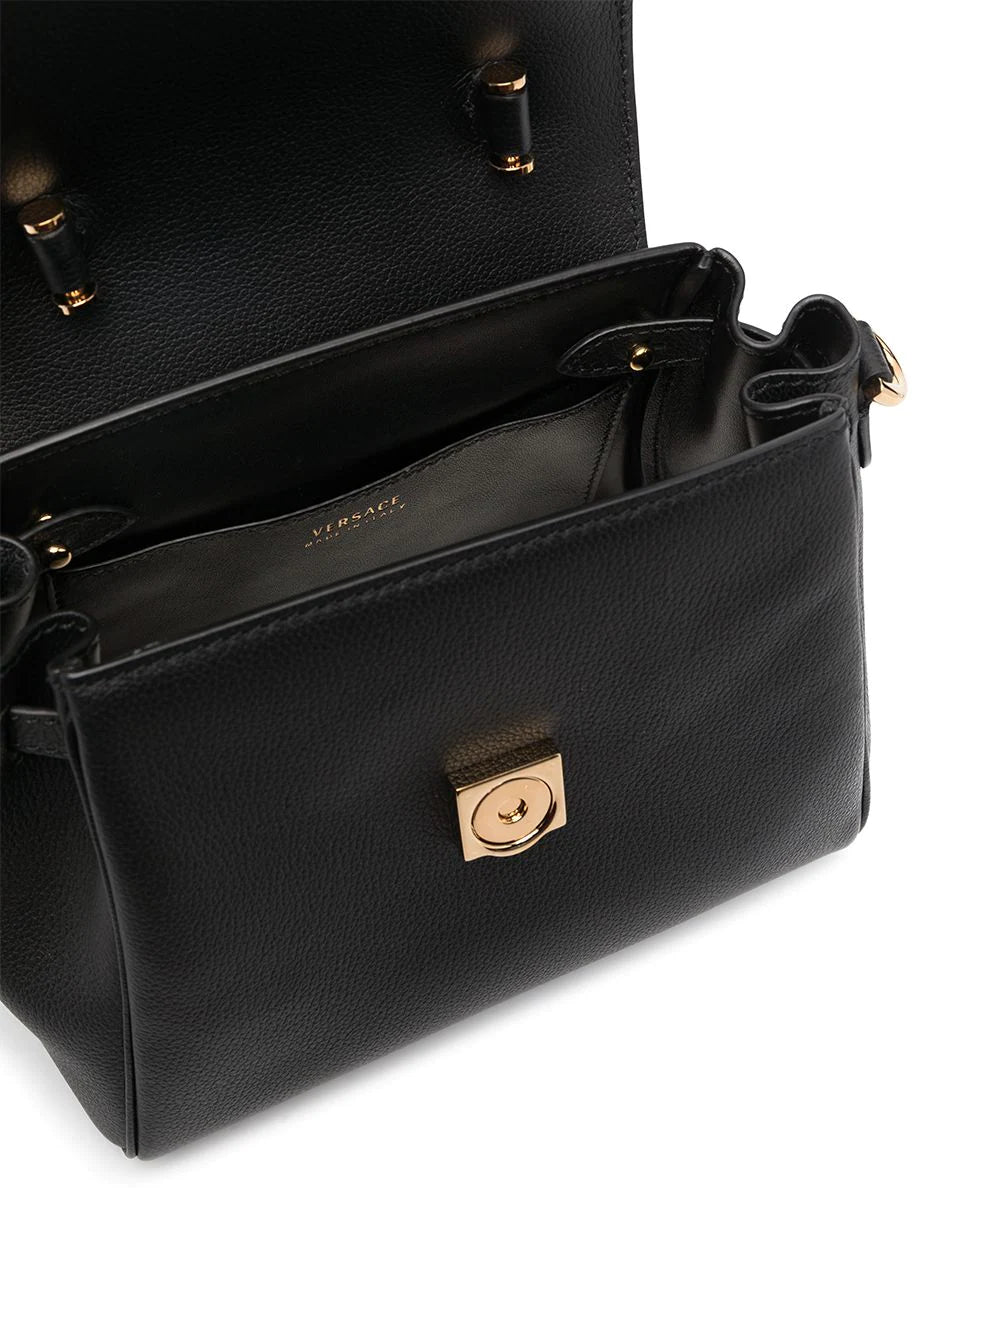 La medusa leather handbag Versace Black in Leather - 21921108